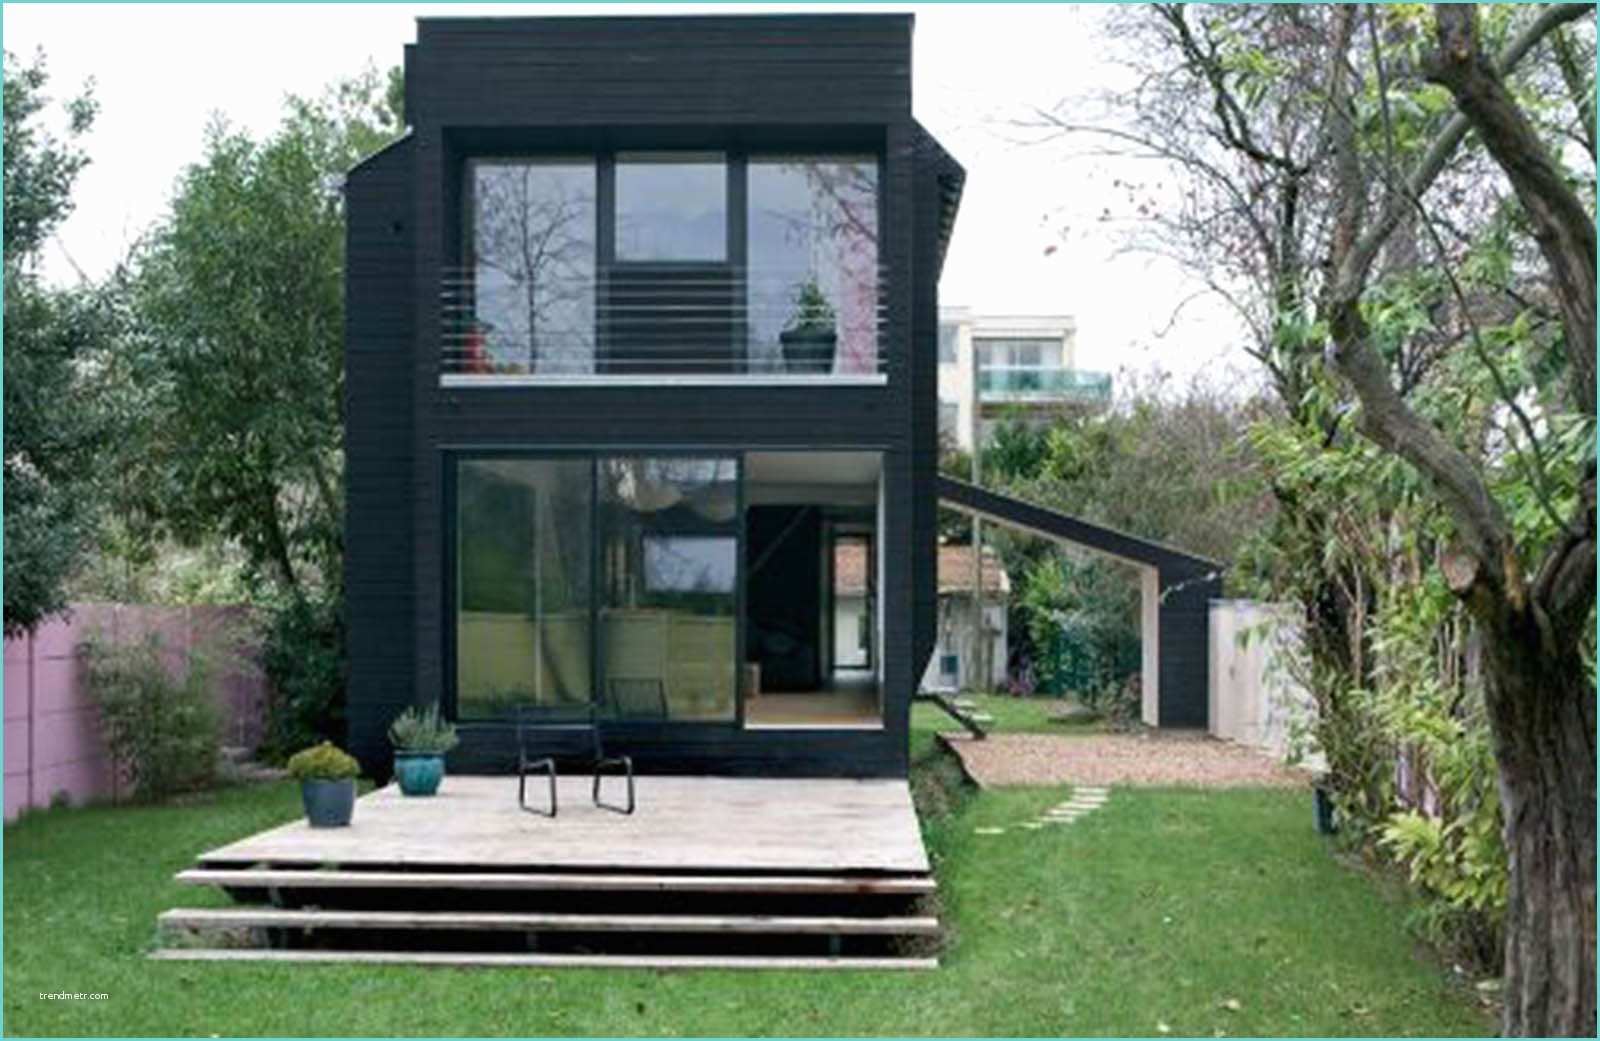 Design Facade Maison Moderne Qu Est Ce Qu Une Maison Contemporaine Viving